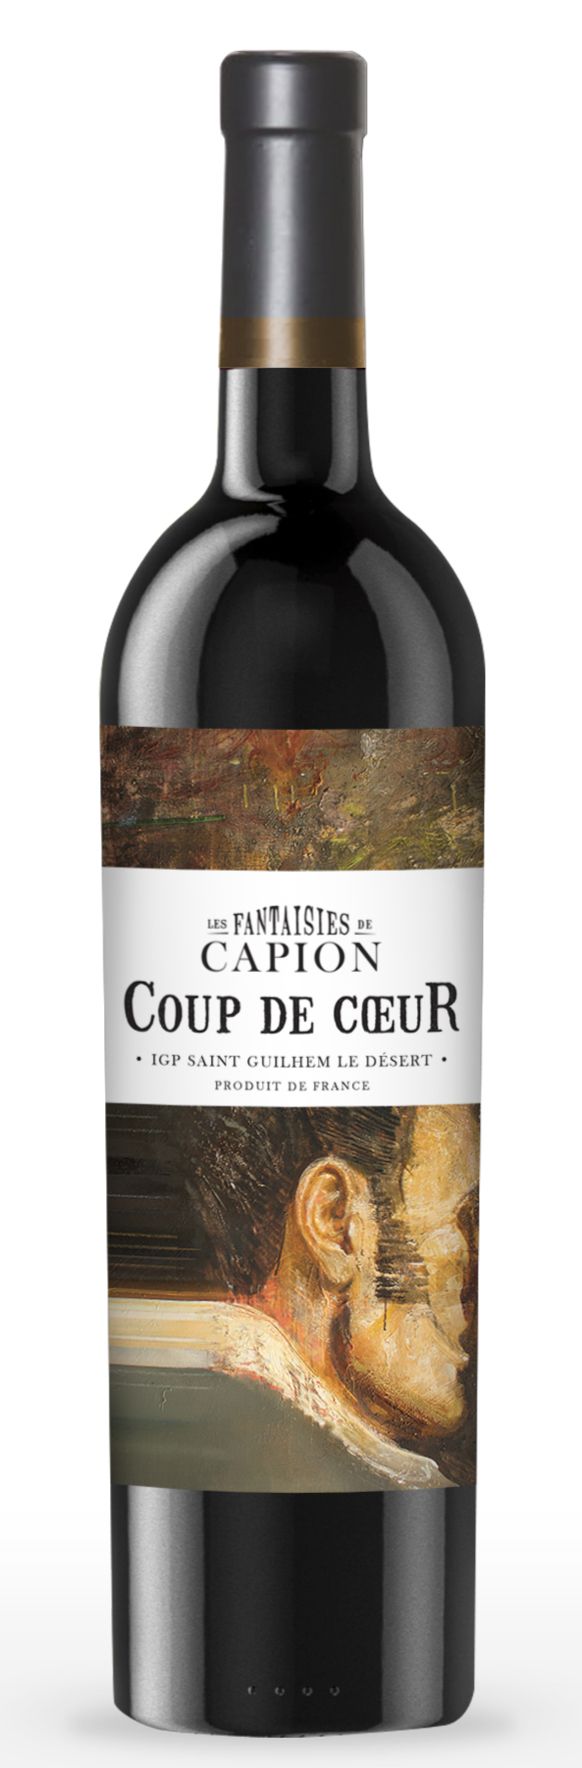 Château Capion LES FANTAISIES DE CAPION, Rouge, 2016, Saint-Guilhem-le-Désert. Bottle image